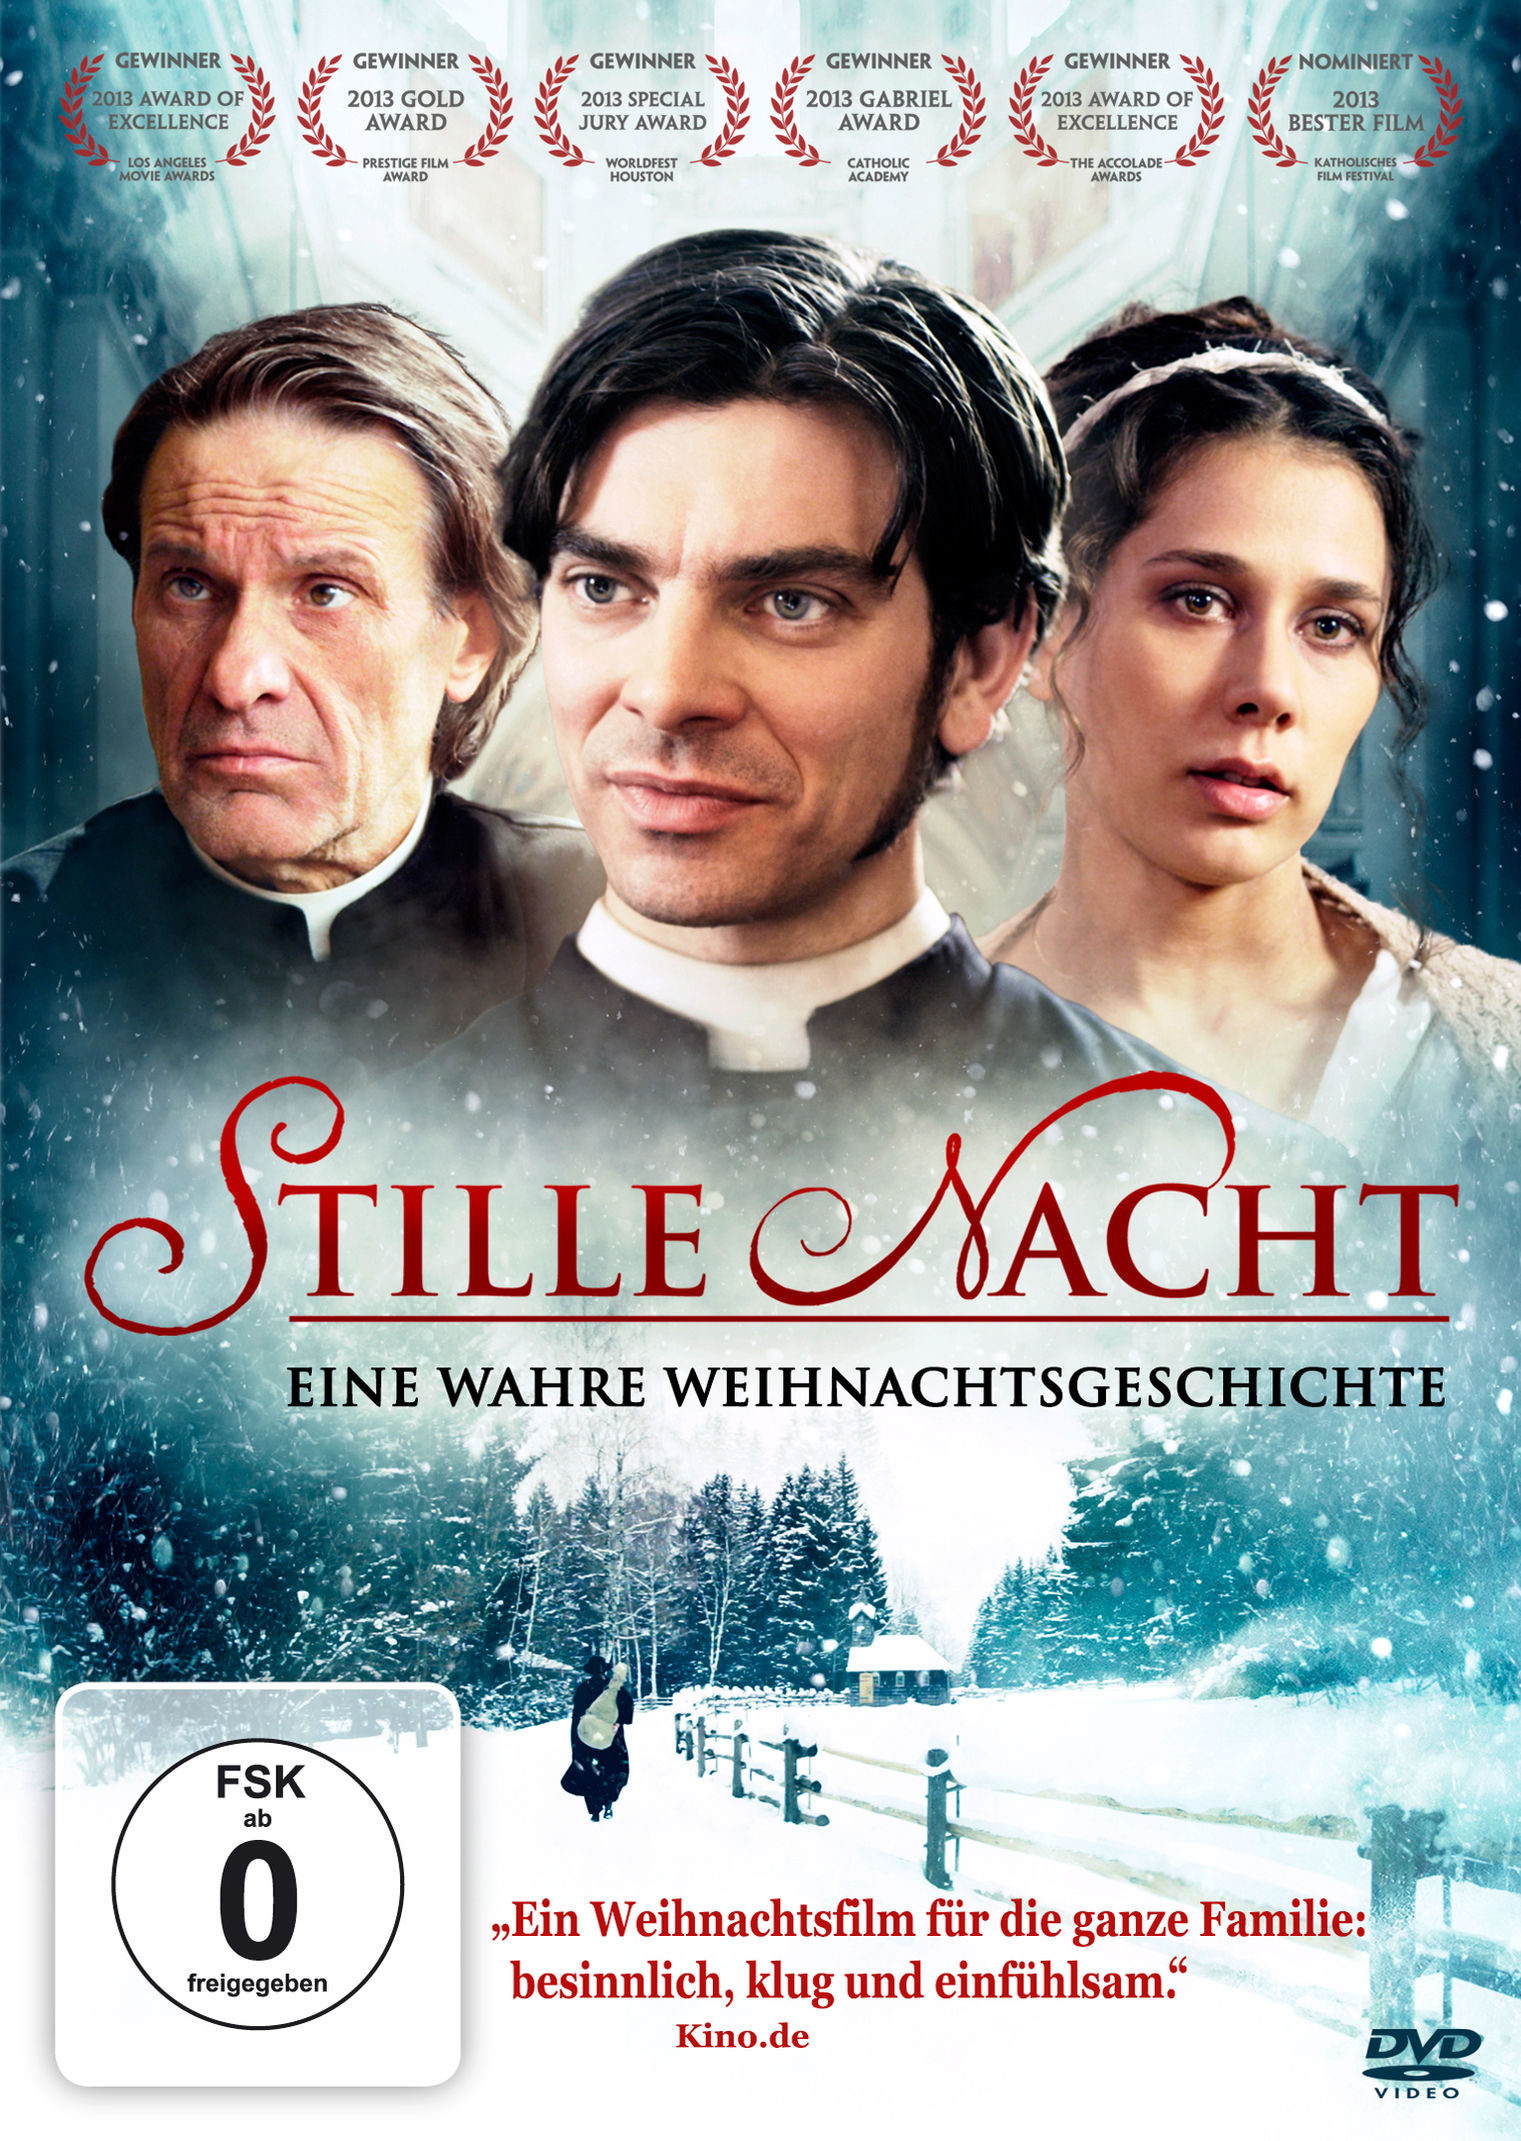 Stille Nacht - Eine wahre Weihnachtsgeschichte DVD | Weltbild.at